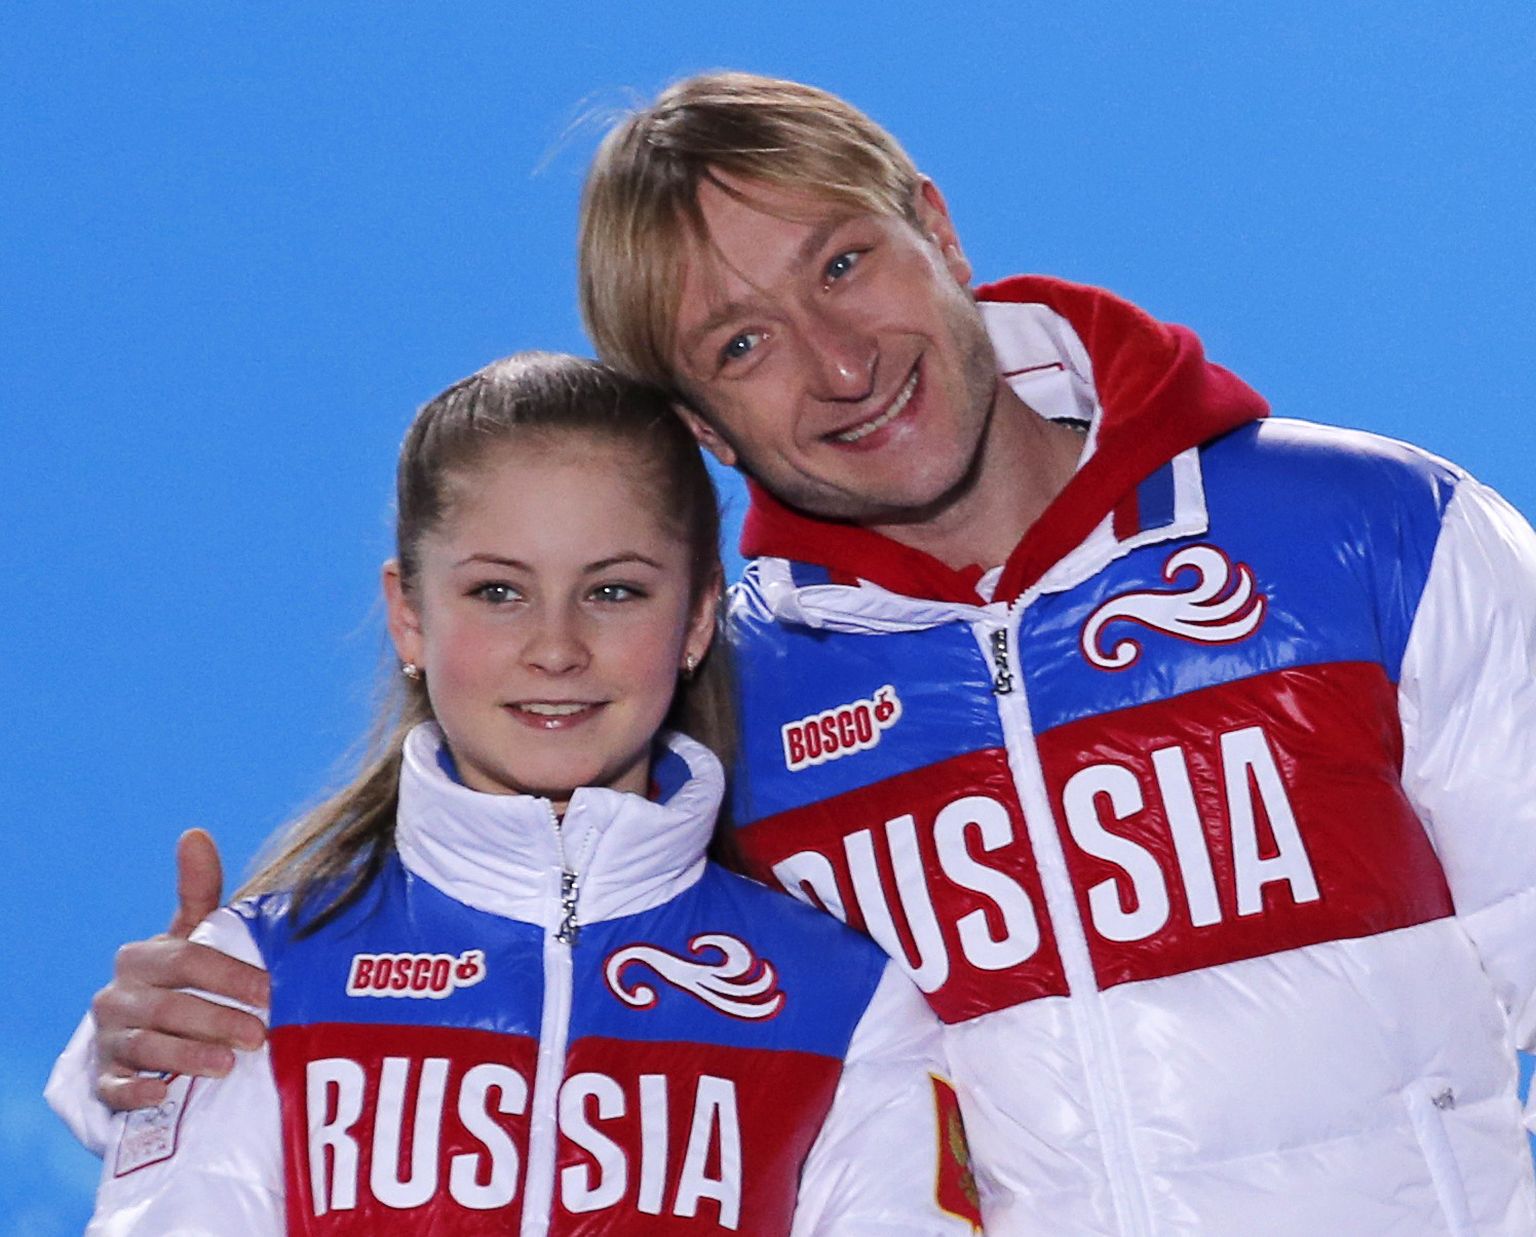 Юлия Липницкая и Евгений Плющенко